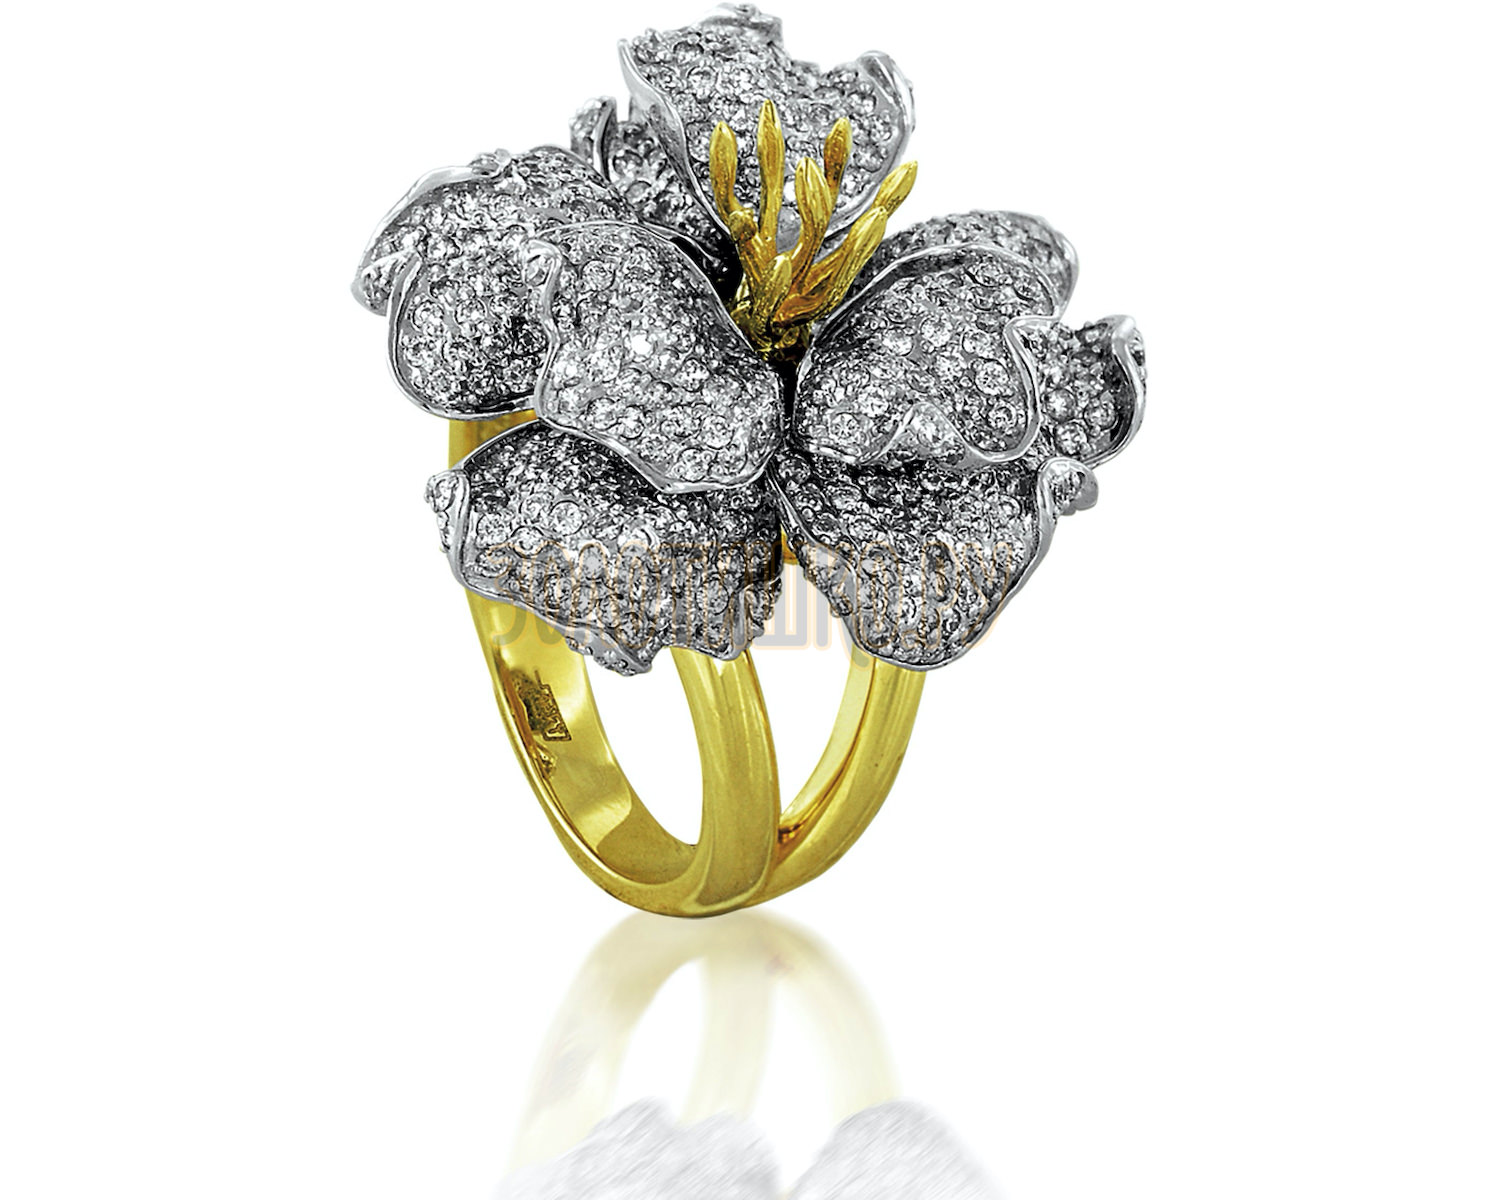 Кольца золотые в форме цветка